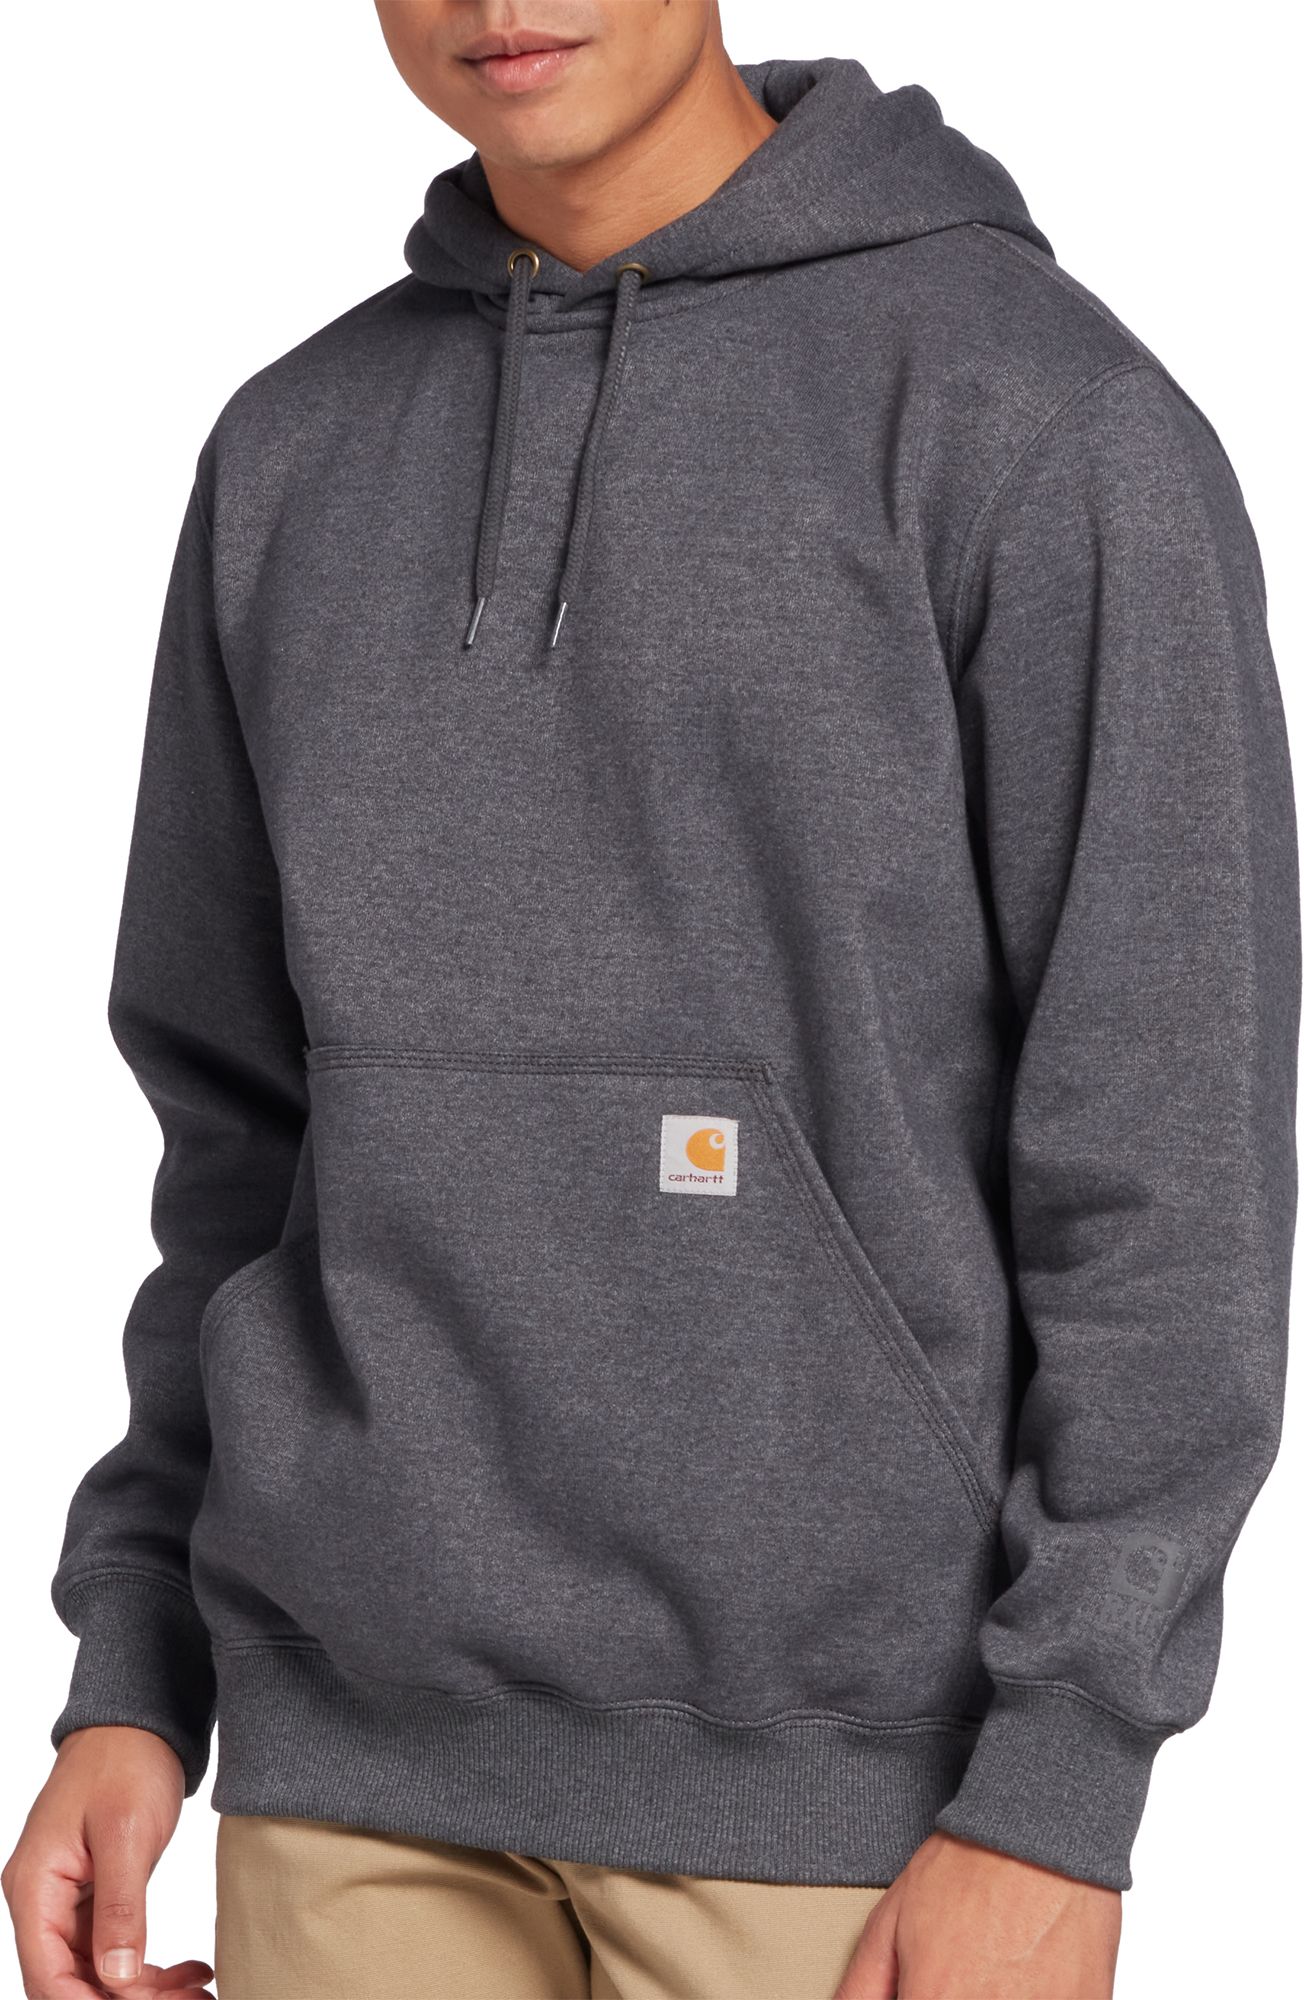 hoodies under 50 dollars